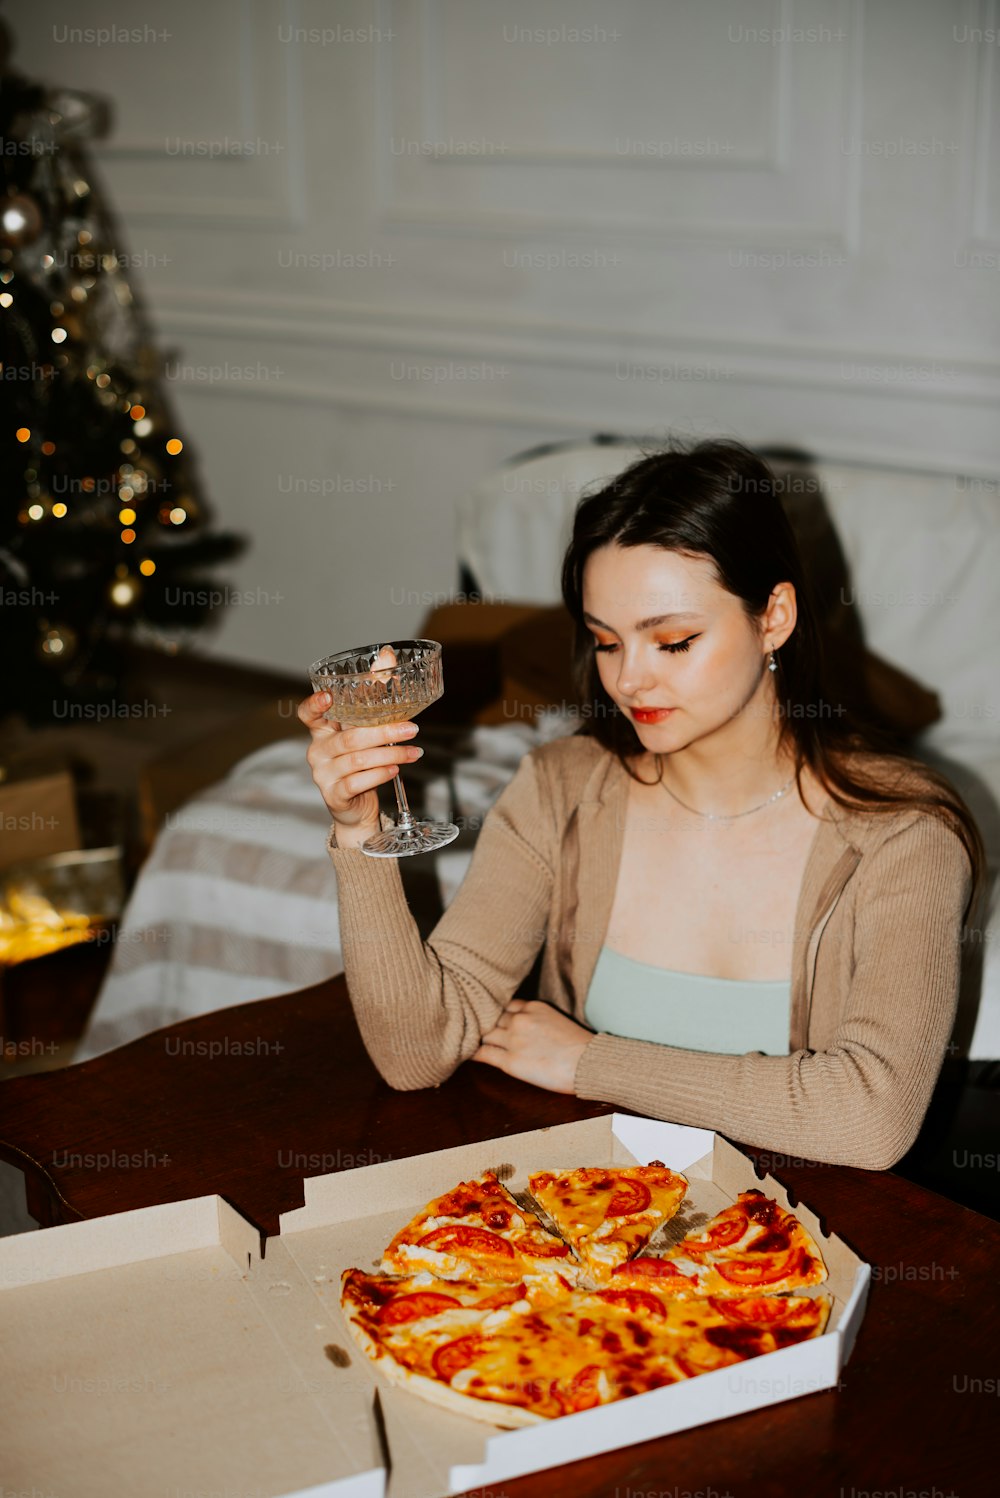 una donna seduta a un tavolo con una pizza davanti a lei